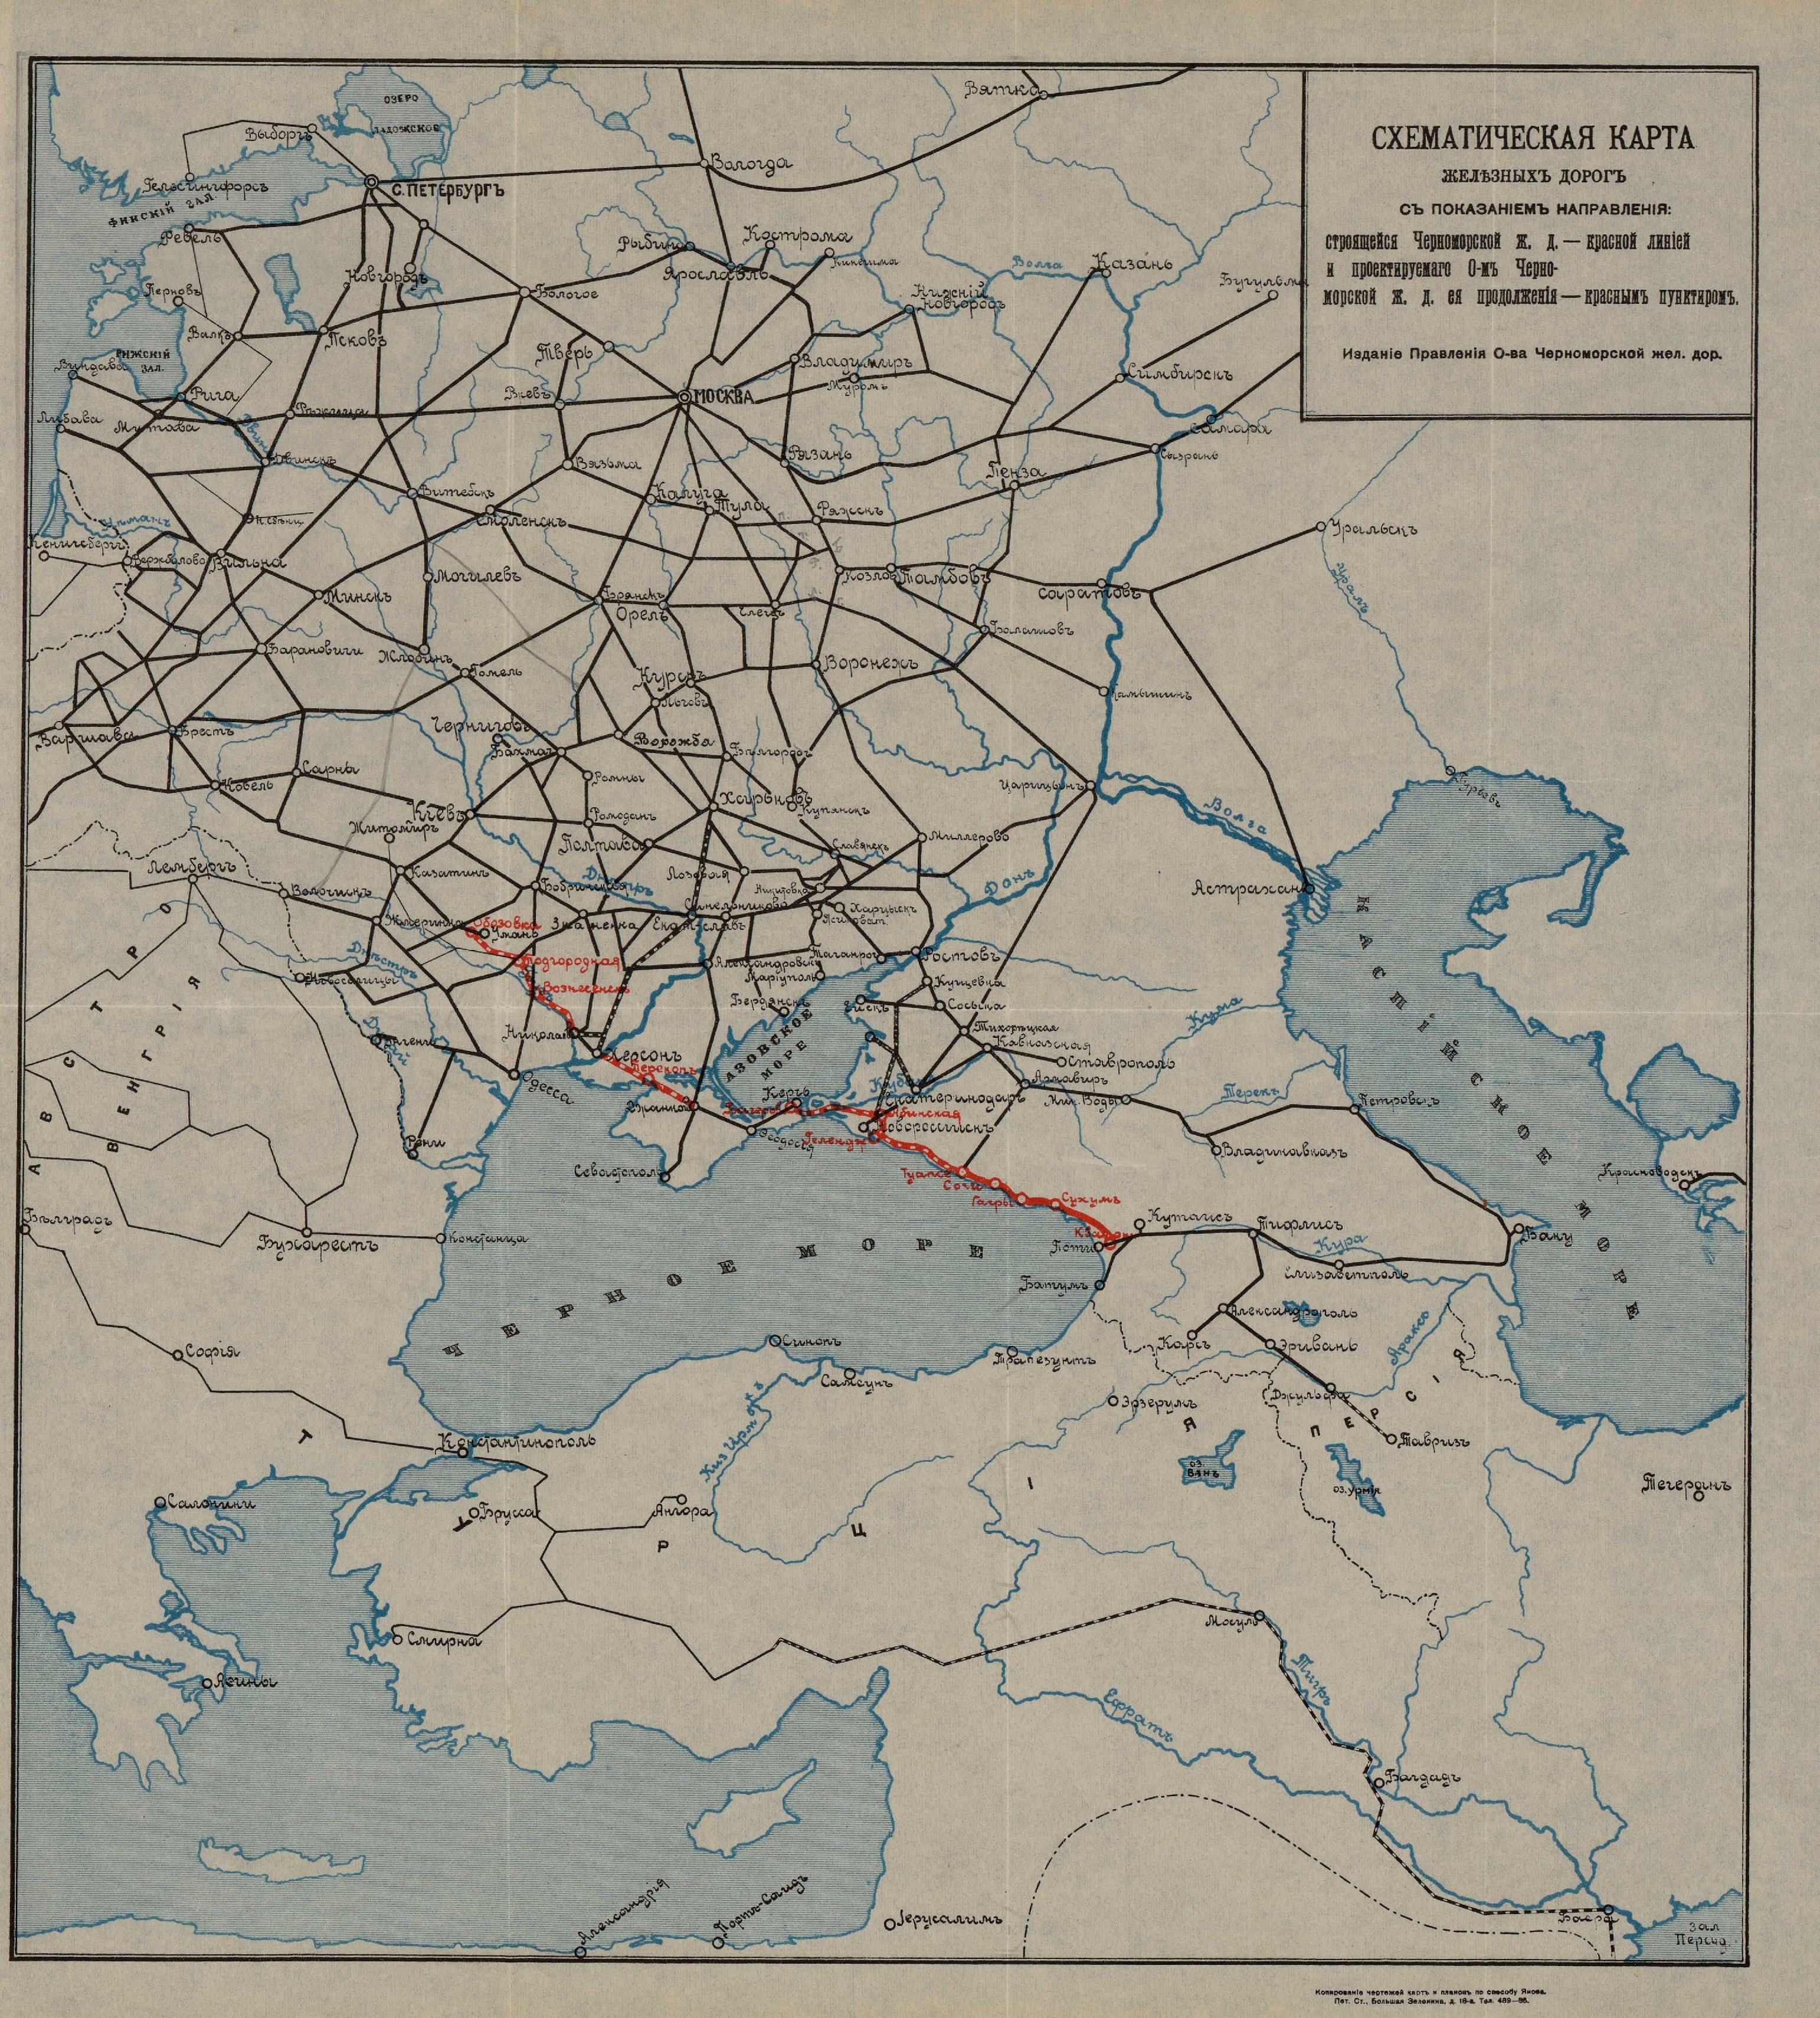 Схематическая карта железных дорог с показанием строящейся Черноморской ж. д. и ее проектируемого продолжения